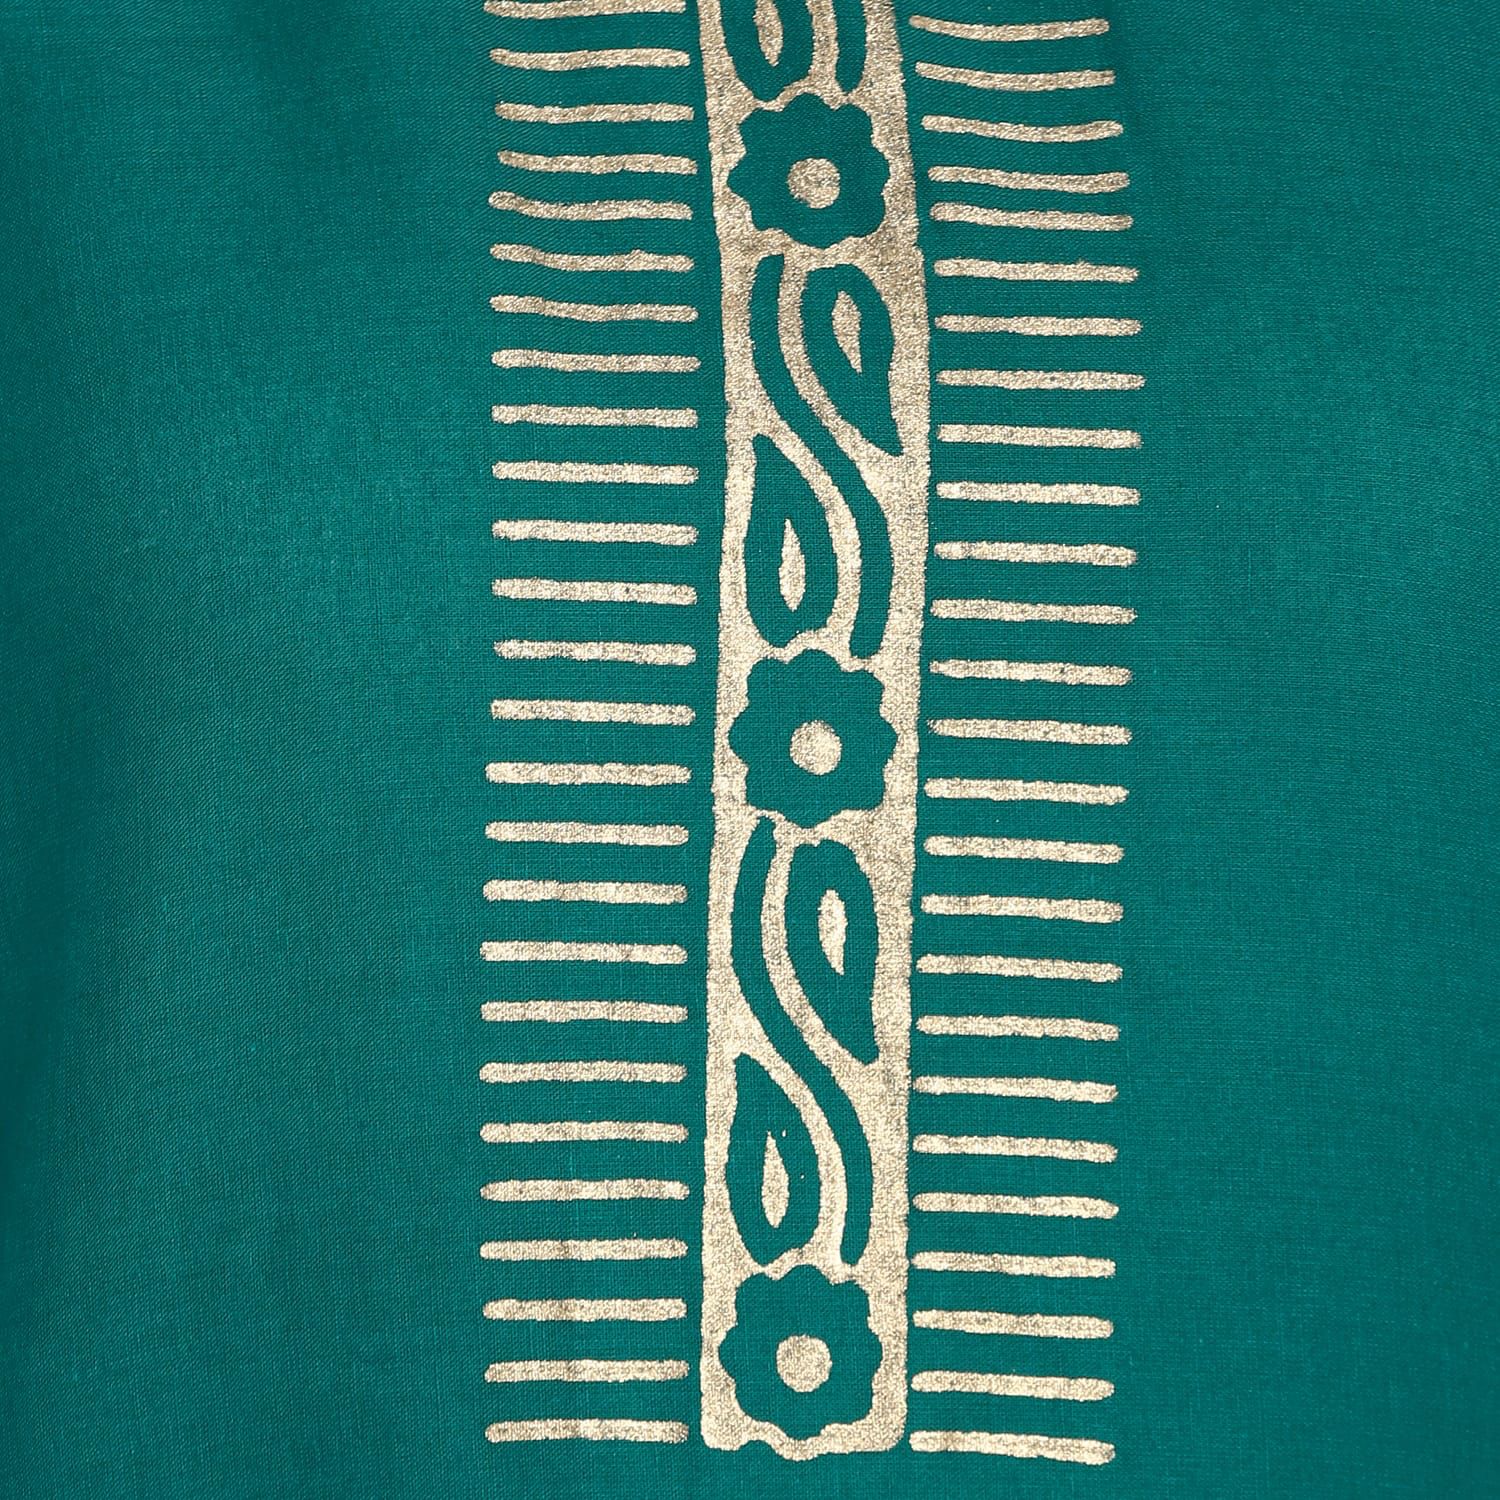 Women's Green Printed Straight Kurta - Wahe-Noor